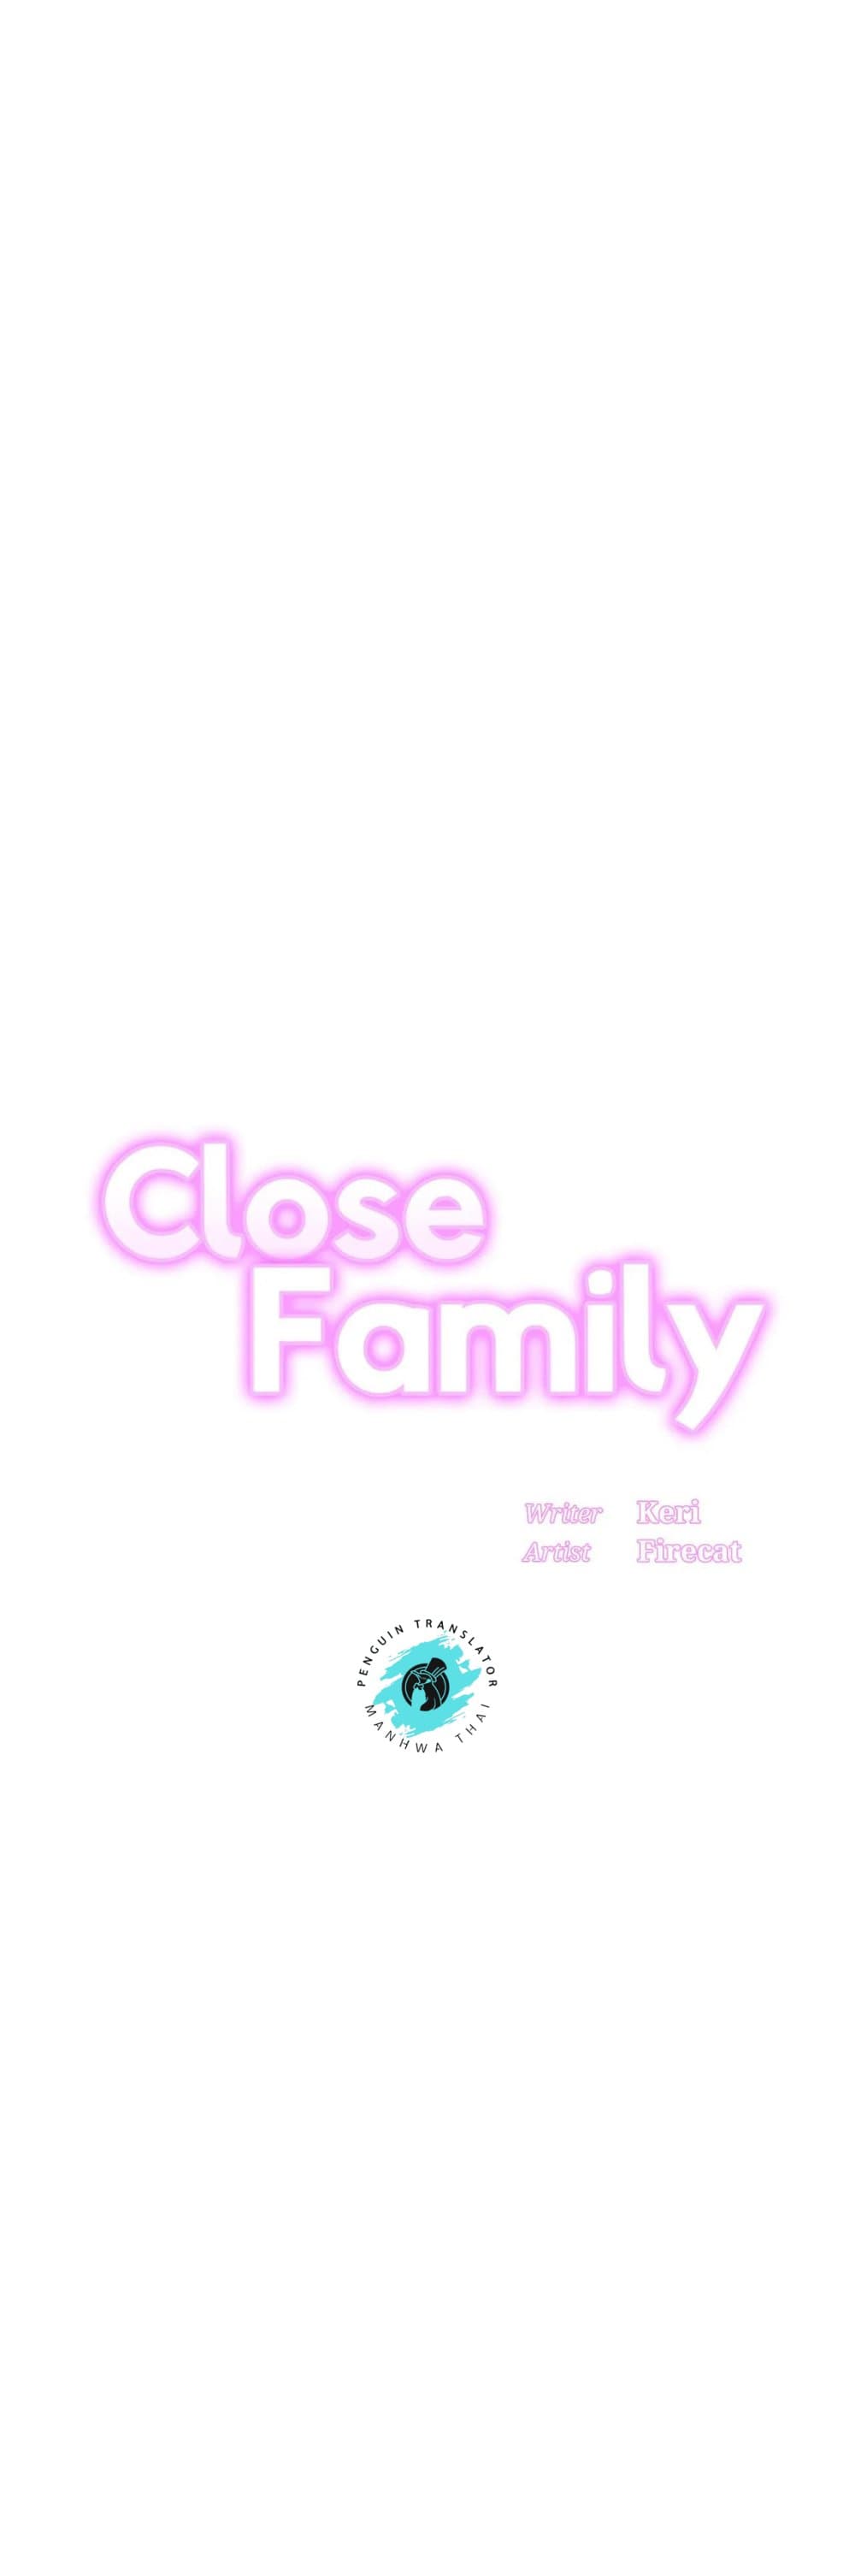 Close Family 54-54